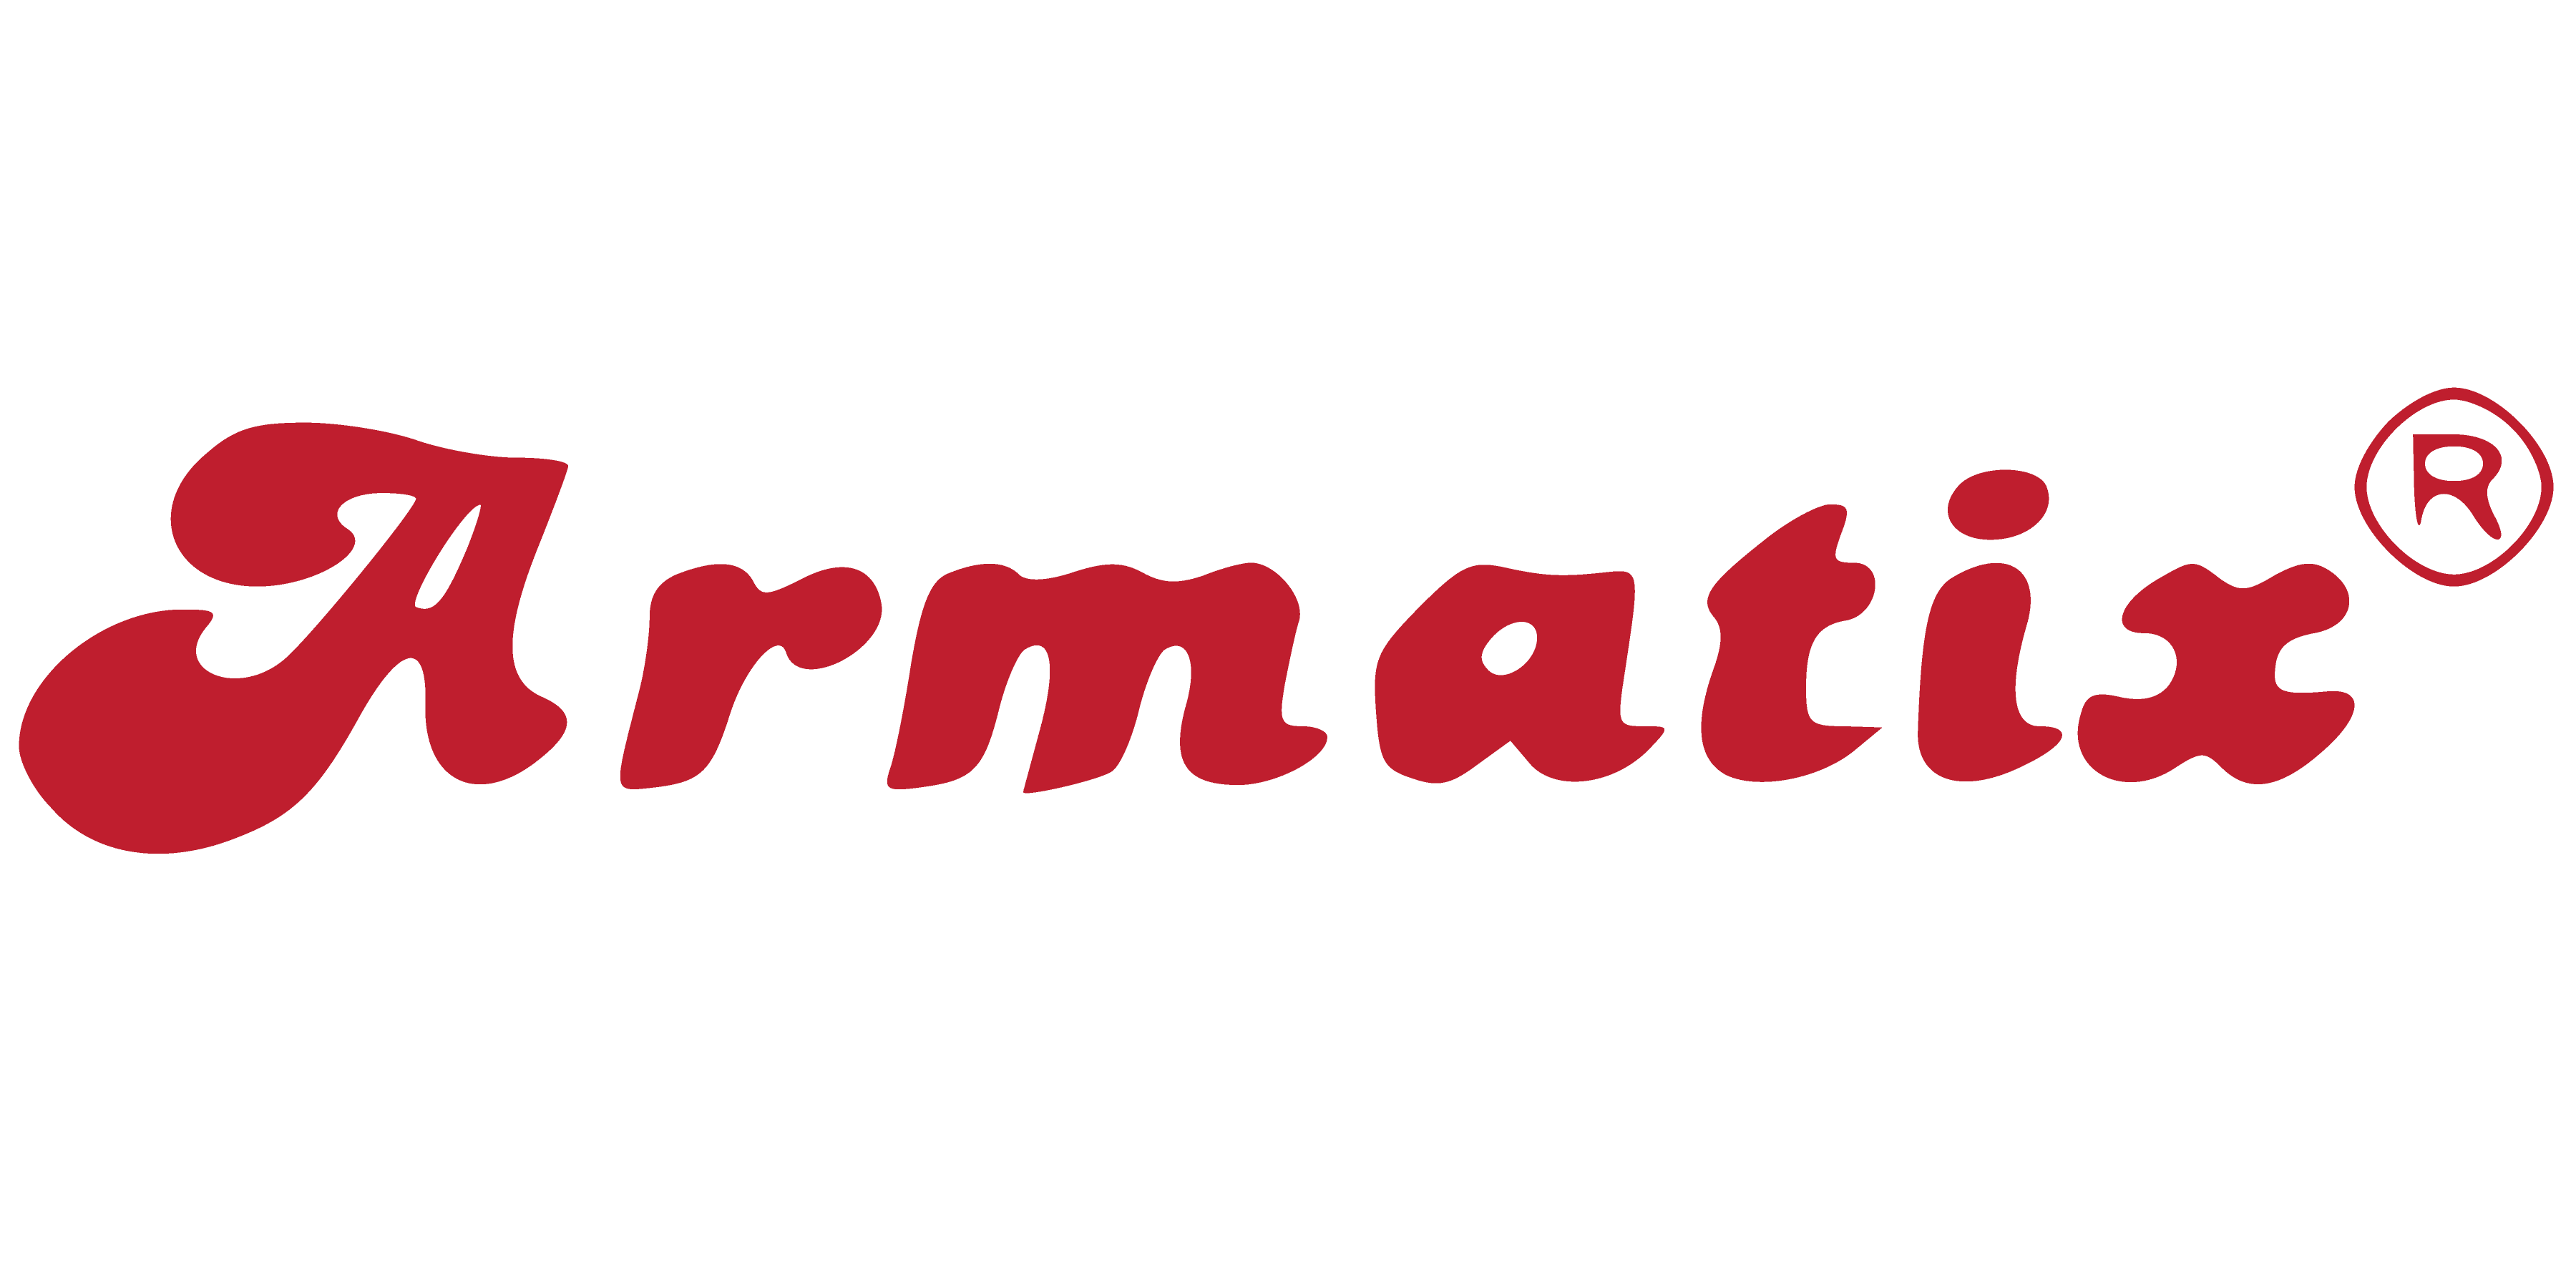 Super power tools